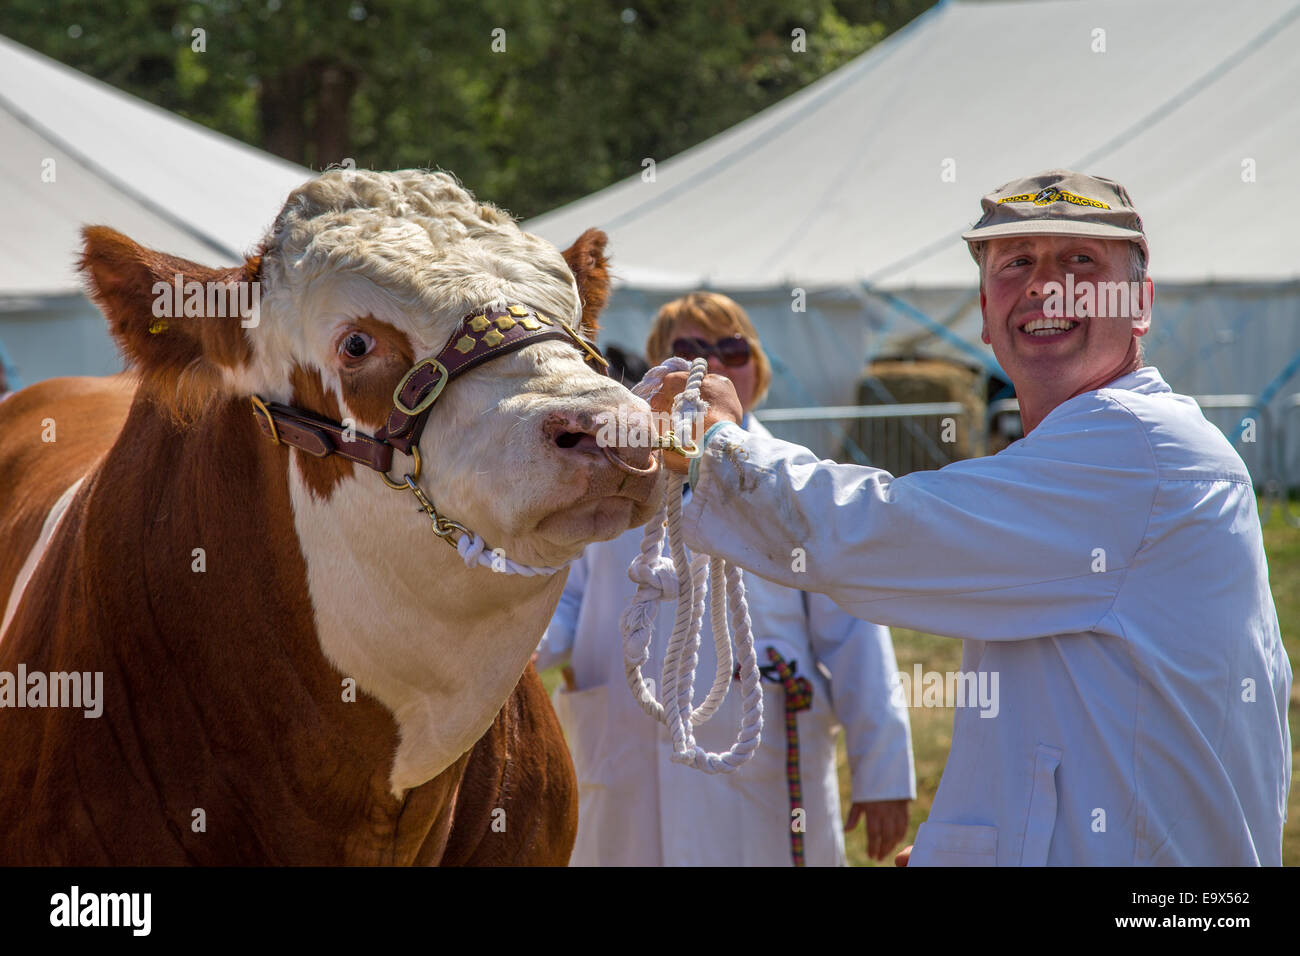 Vache Hereford présentée à la nouvelle forêt Show 2014, Hampshire, Angleterre Banque D'Images